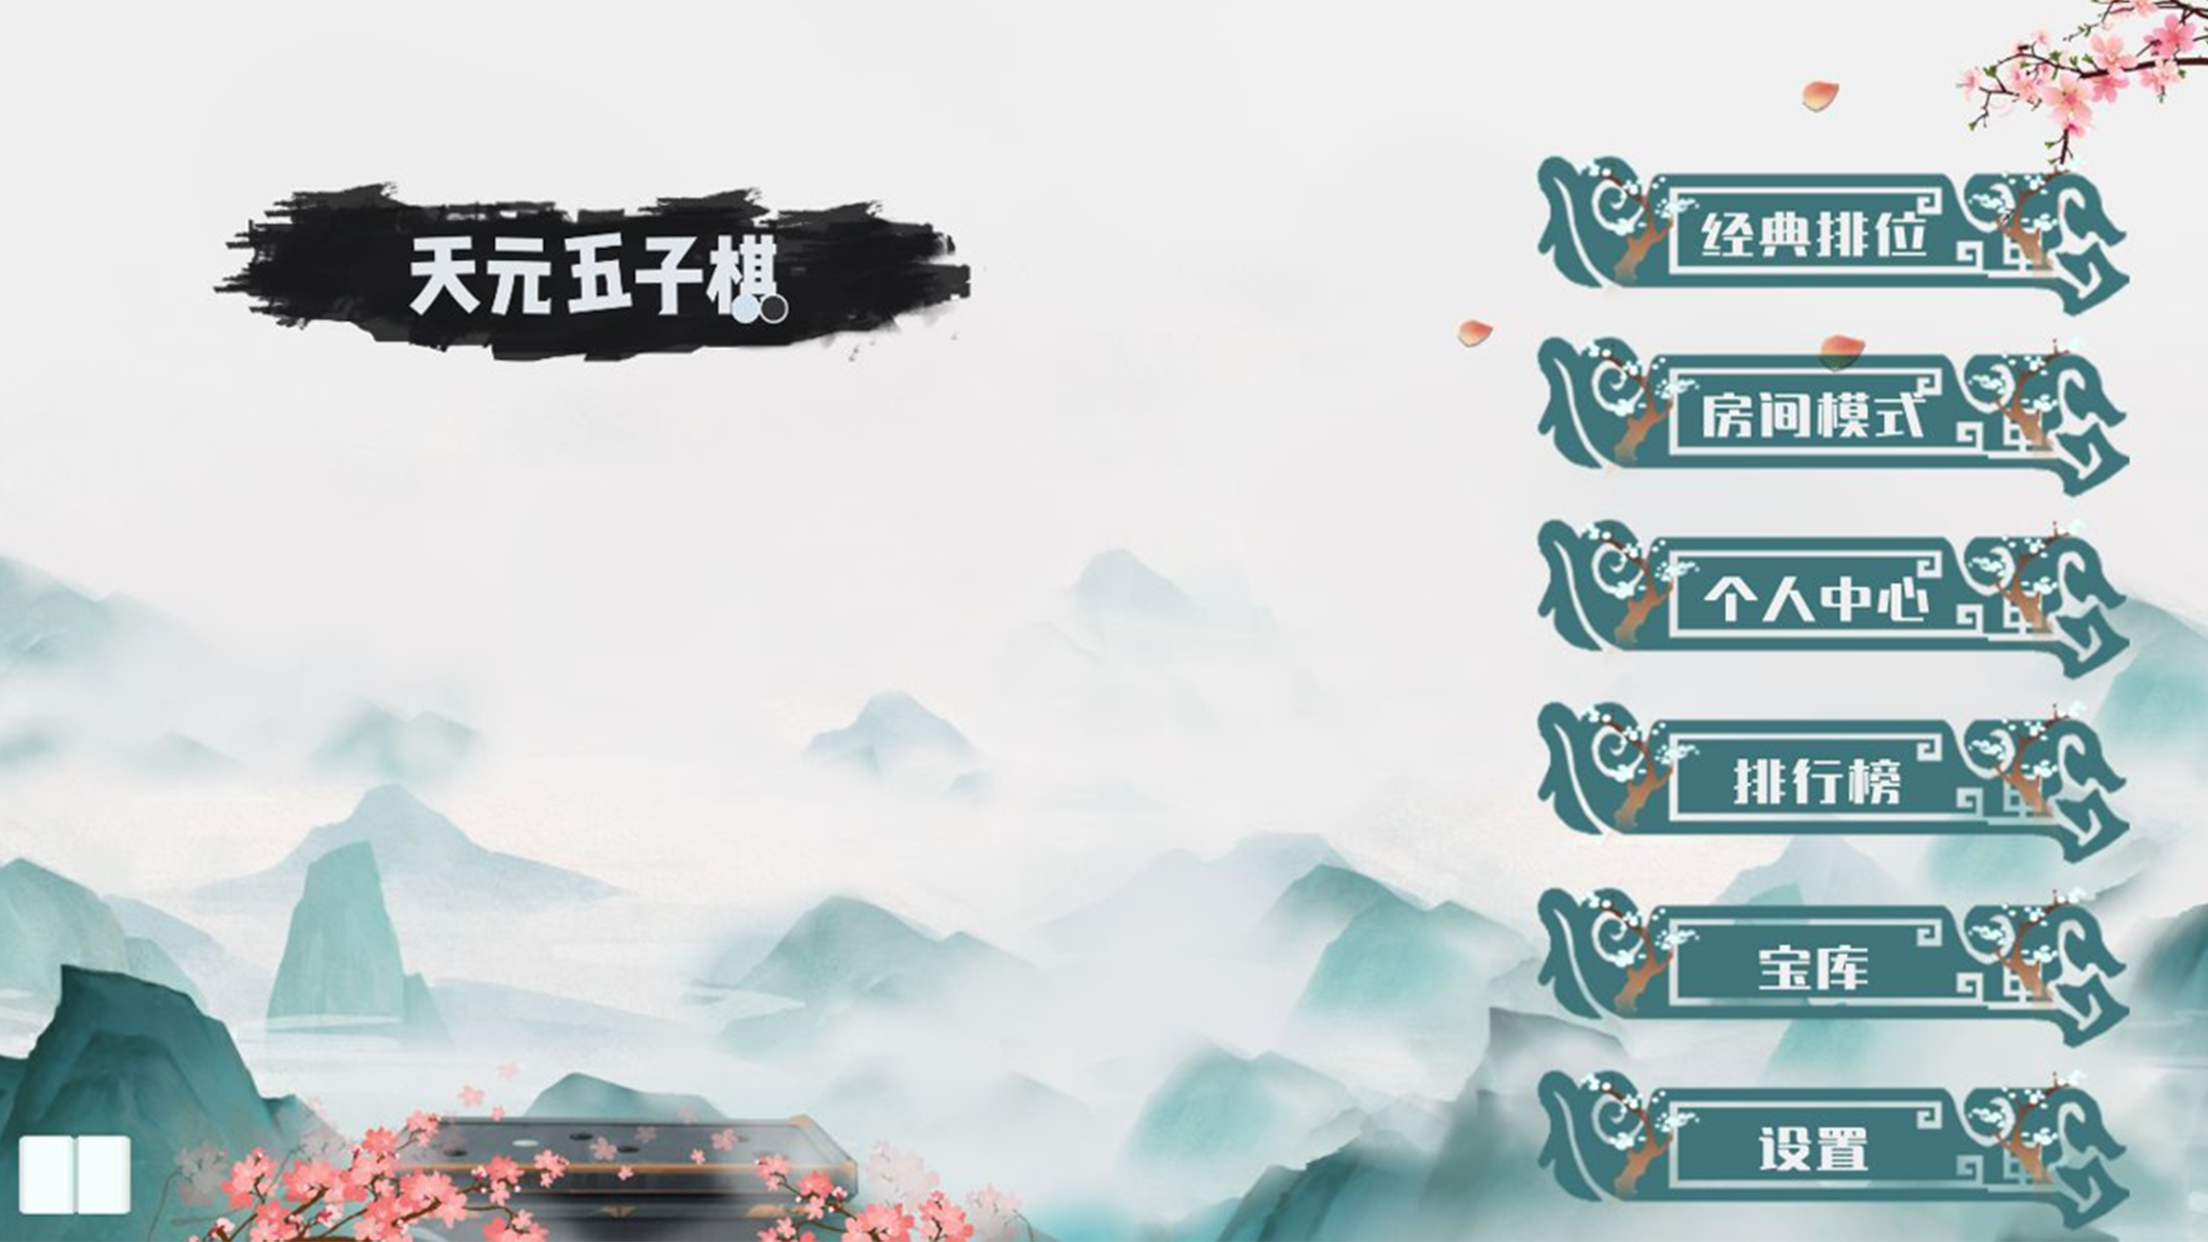 Screenshot 1 of Backgammon Tian Yuan 